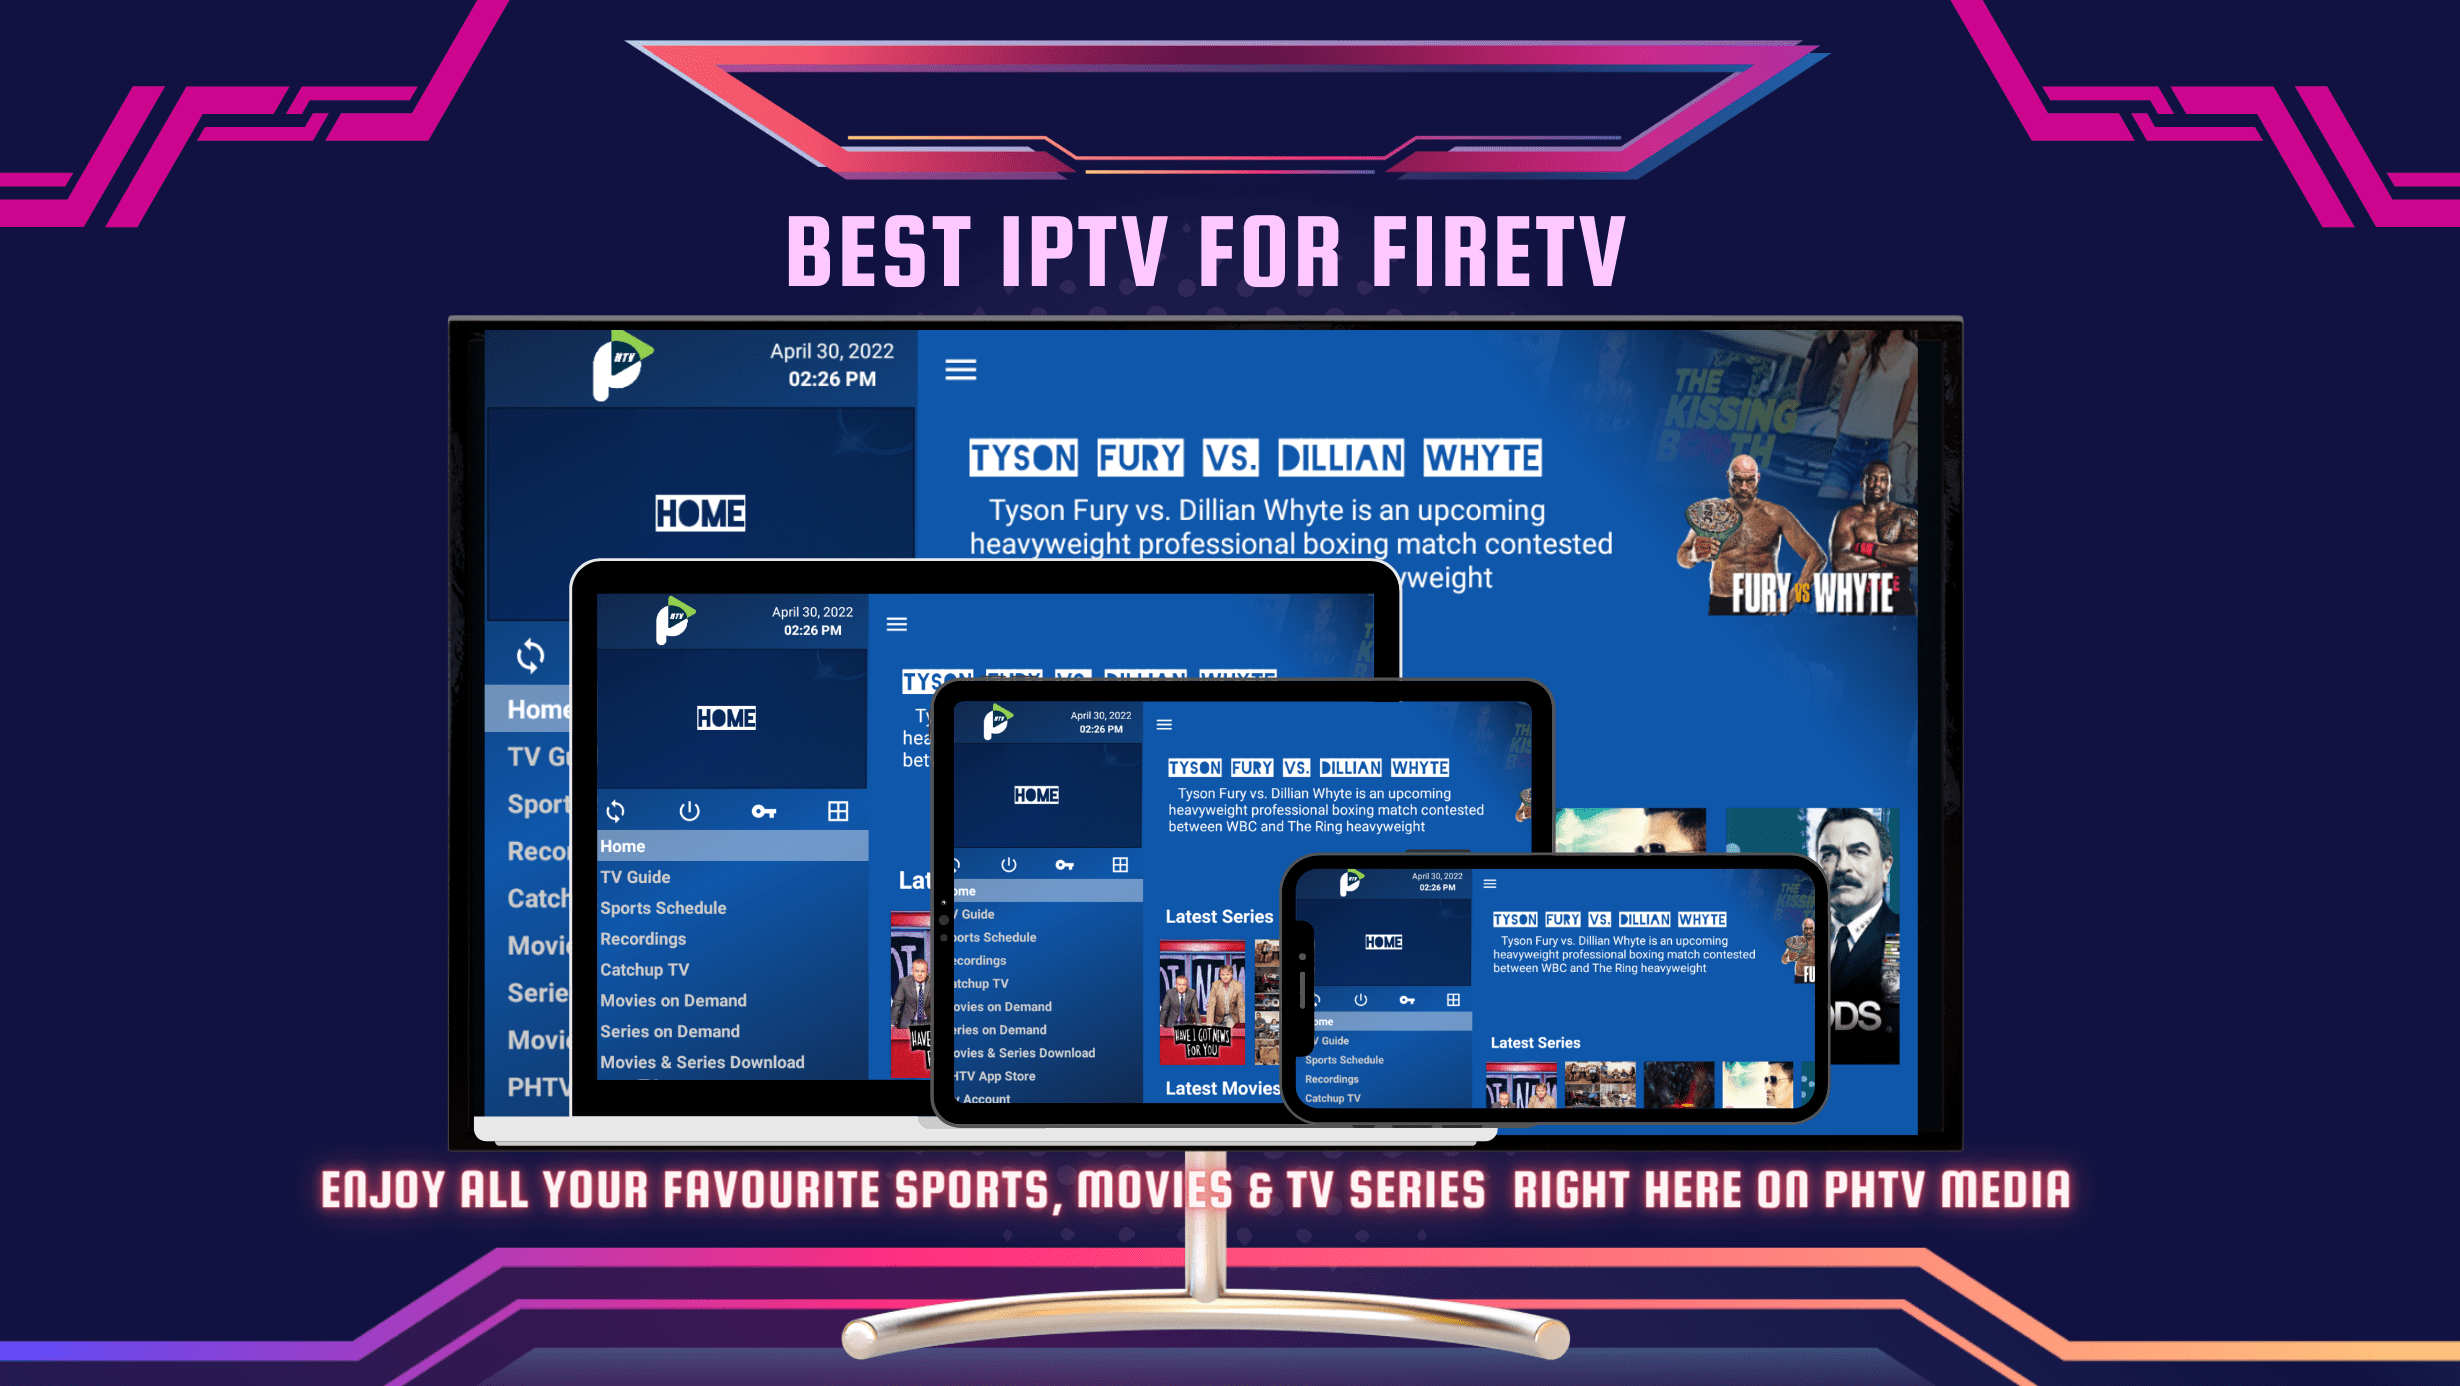 IPTV Firestick - Best IPTV FireTV - We cover all FireTV Devices